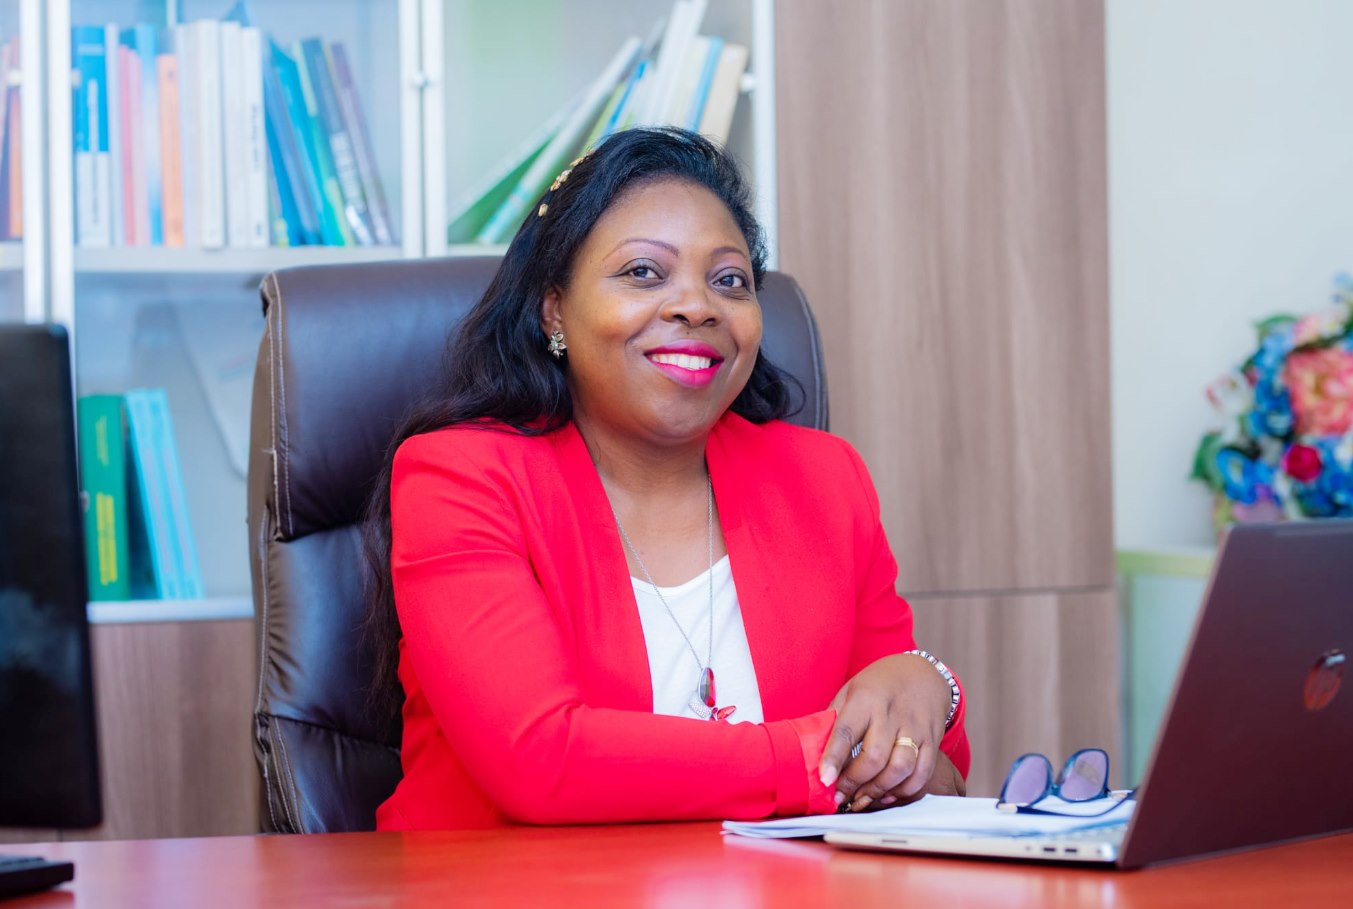 Formation des décideurs : le cabinet OBIV Solutions du Pr Viviane Ondoua Biwolé lance la plateforme d’e-learning "Ufunde" ce 29 septembre 2022 à Yaoundé